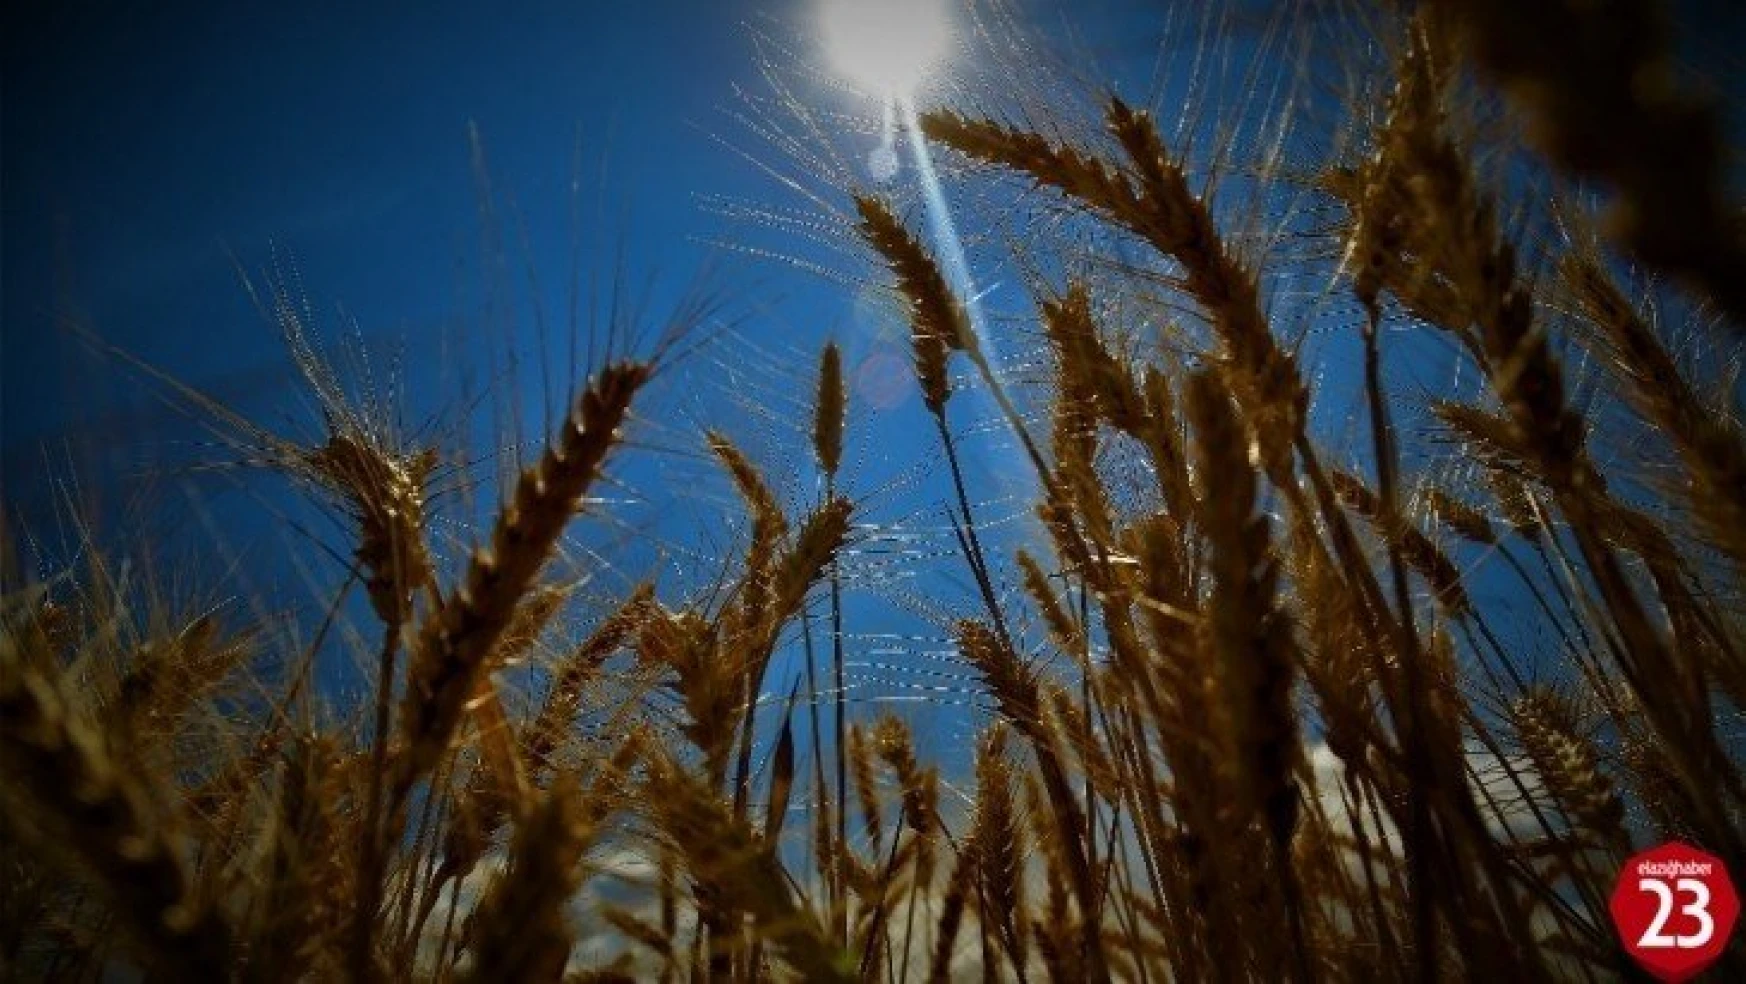 300 bin ton hububat üretilen Elazığ'da, 32 yerli tohum denendi